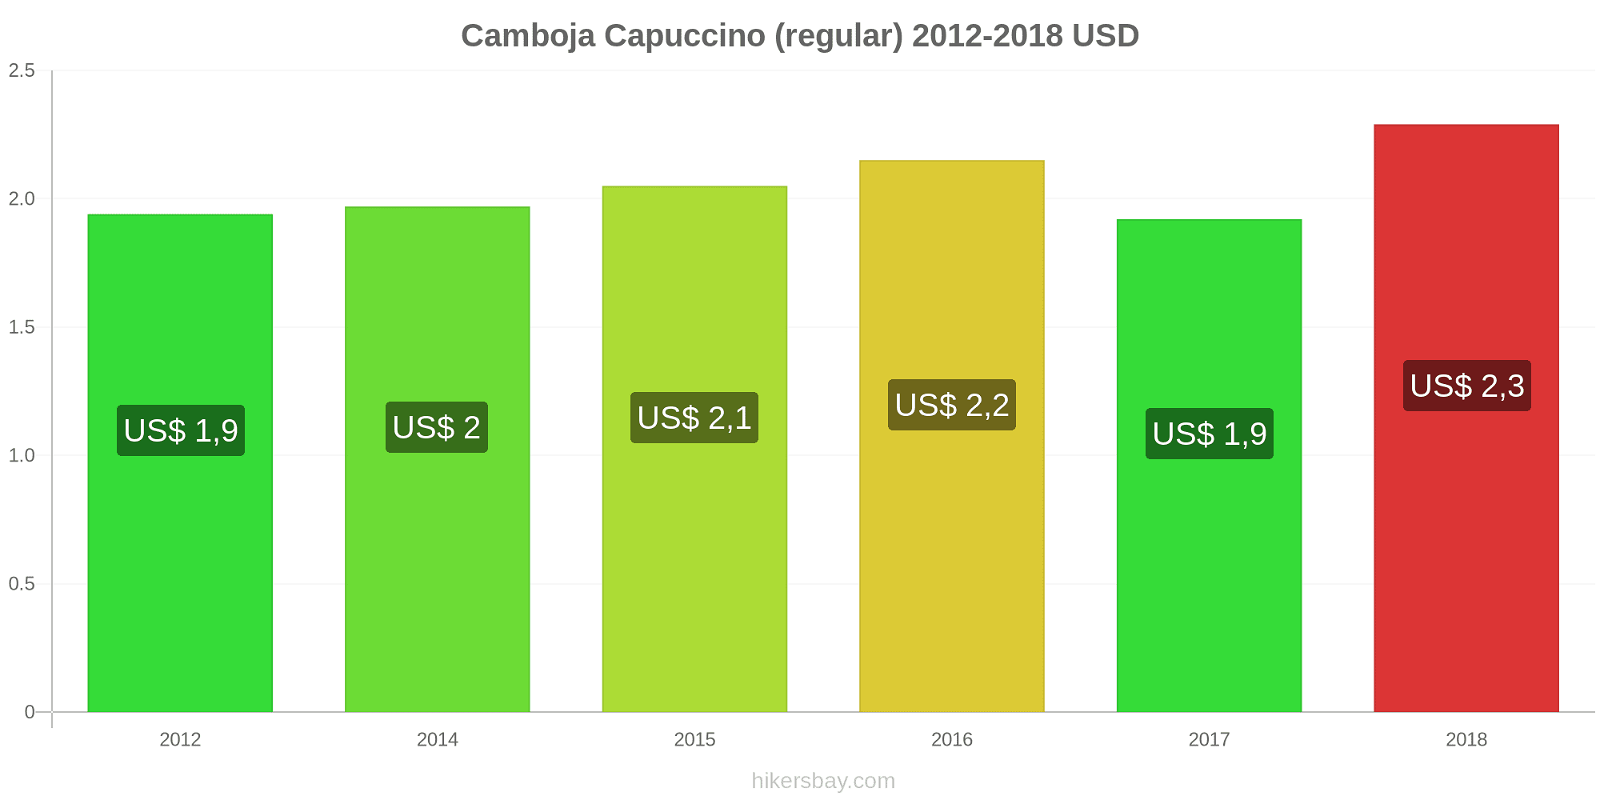 Camboja mudanças de preços Cappuccino hikersbay.com